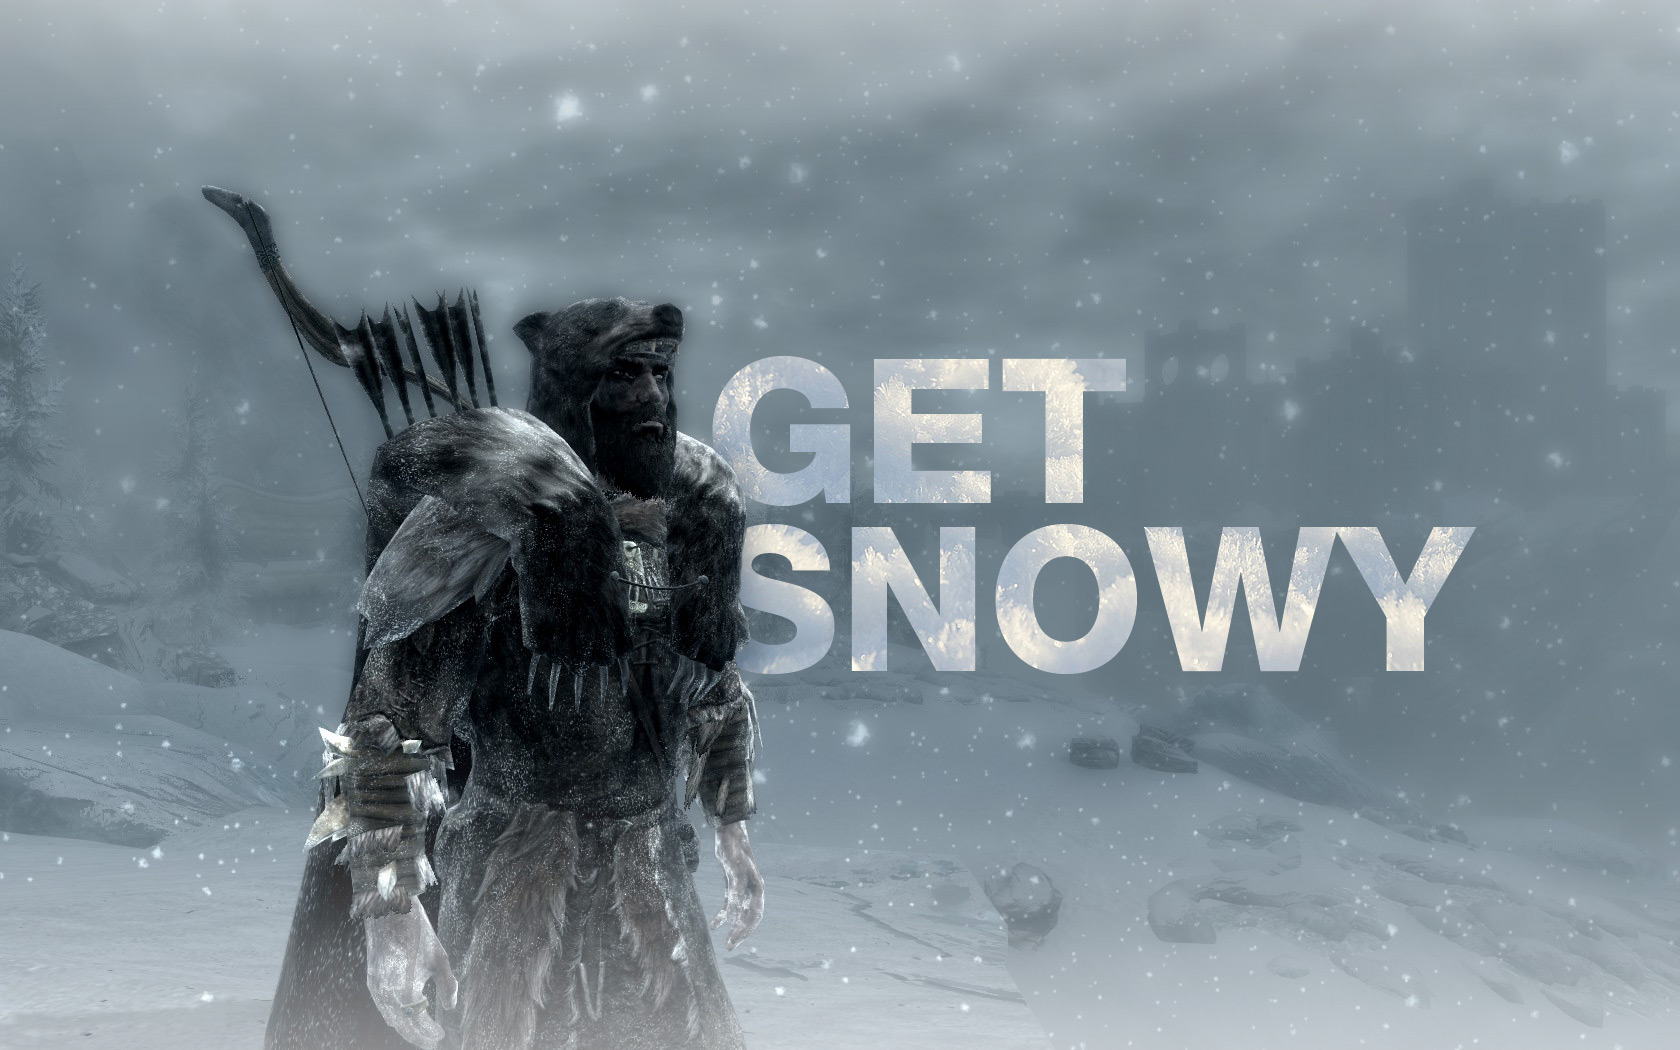 Броня в снегу \ Get Snowy